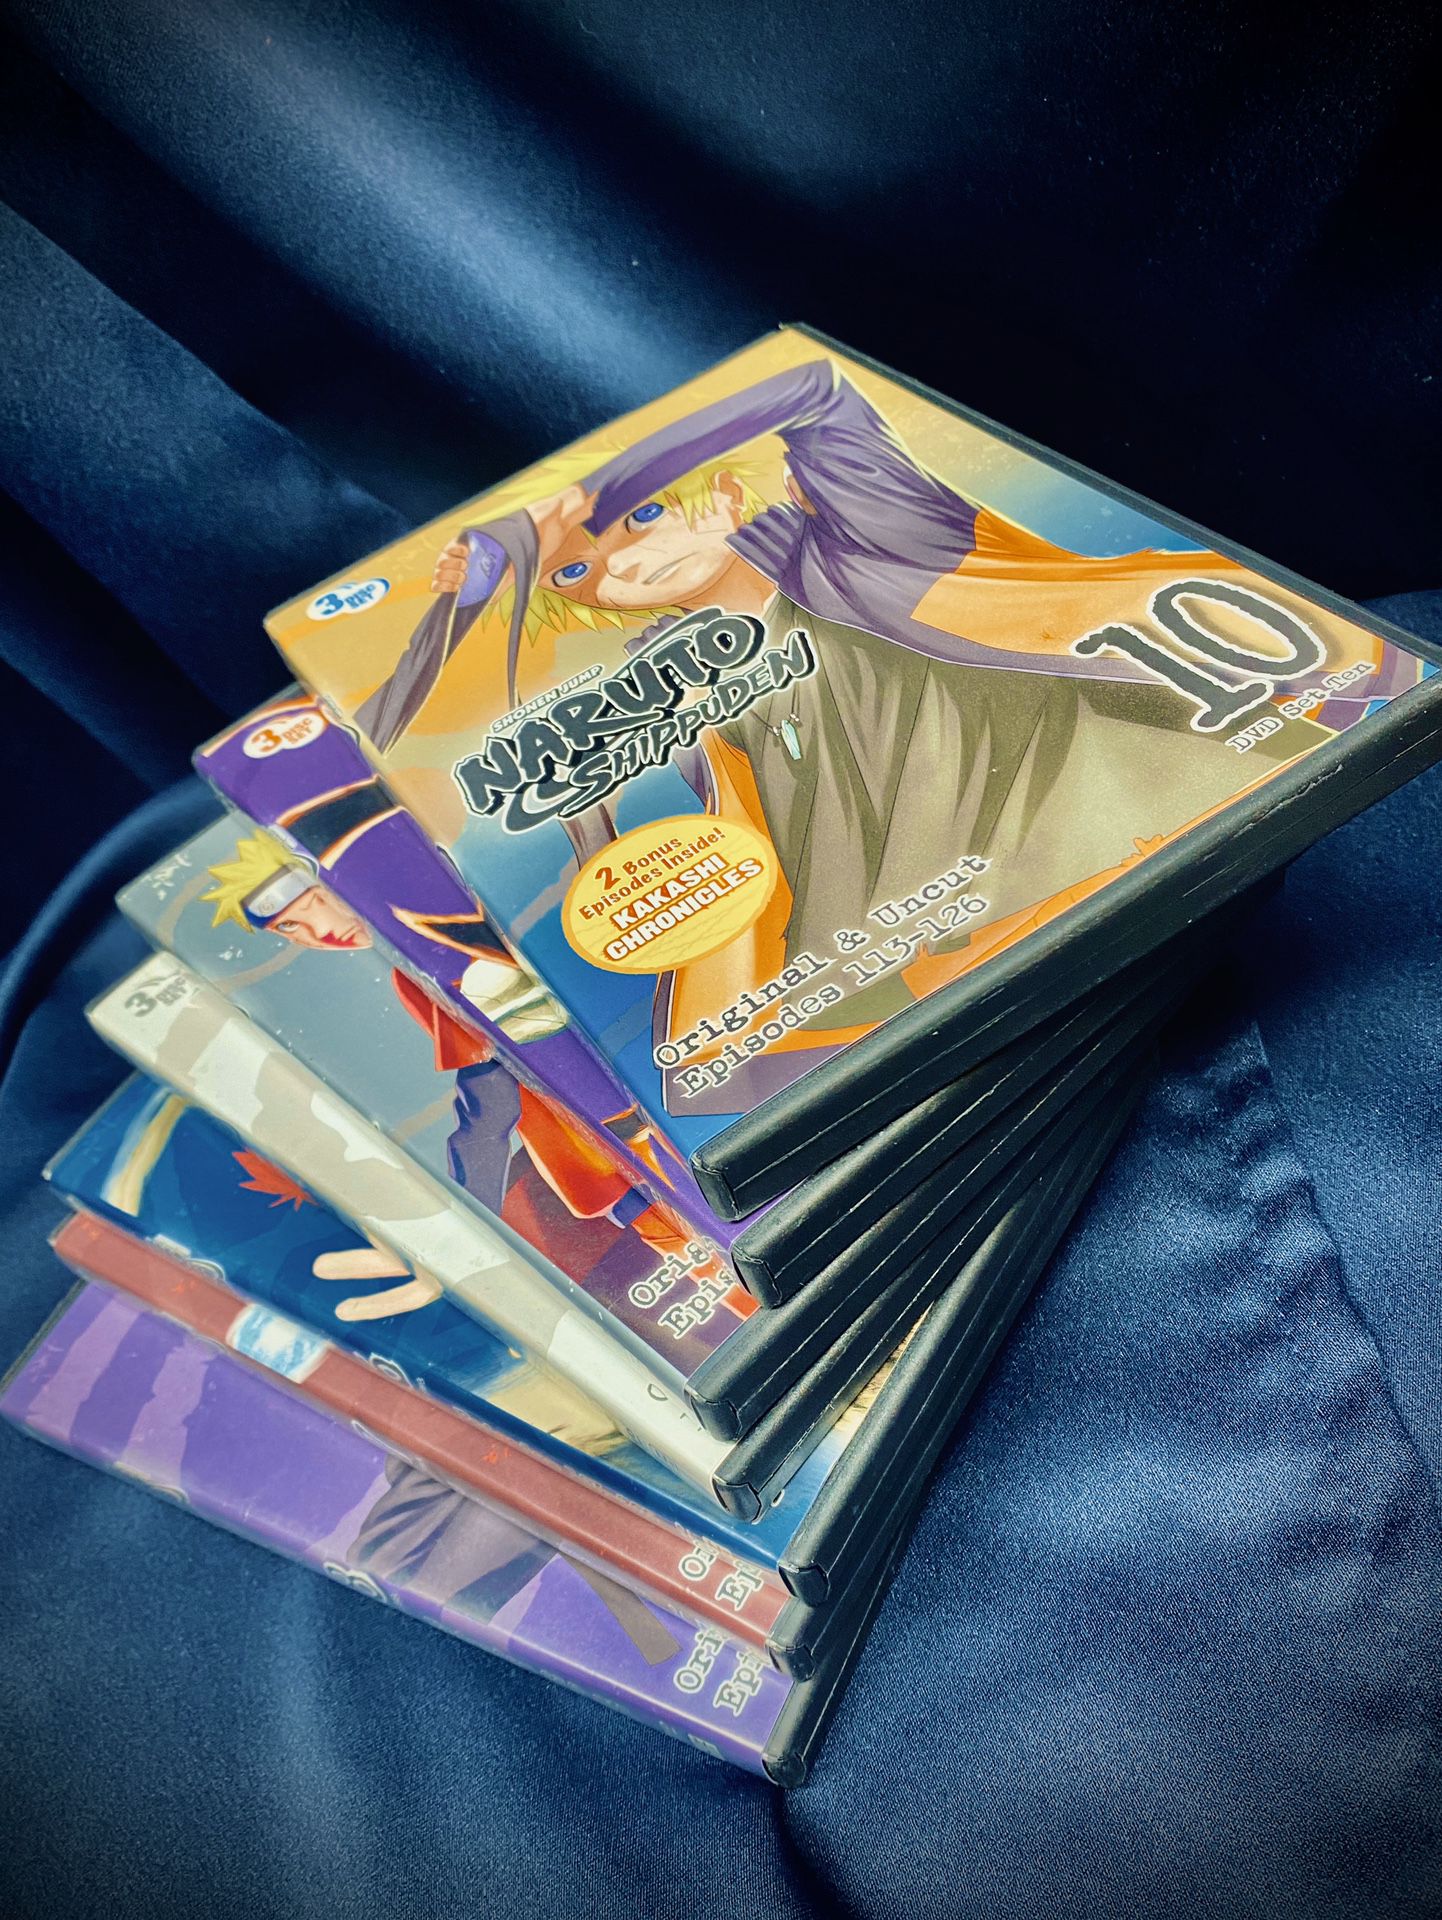 Naruto “ Shippuden “ DVD Sets #15 & #18